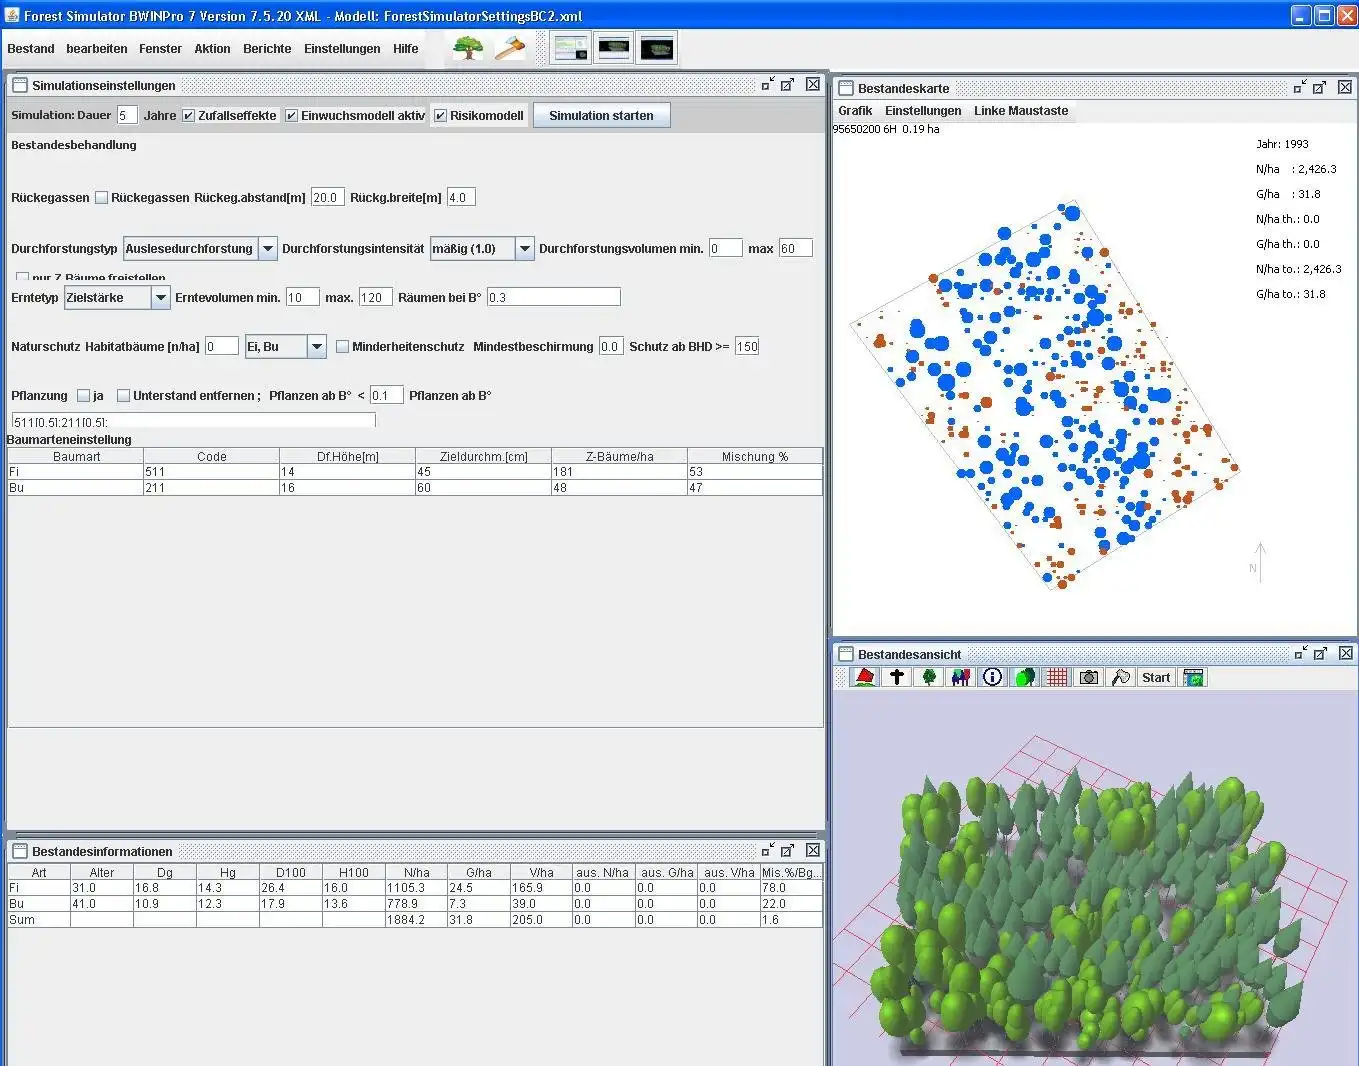 Descărcați instrumentul web sau aplicația web TreeGrOSS Forest Growth Simulation